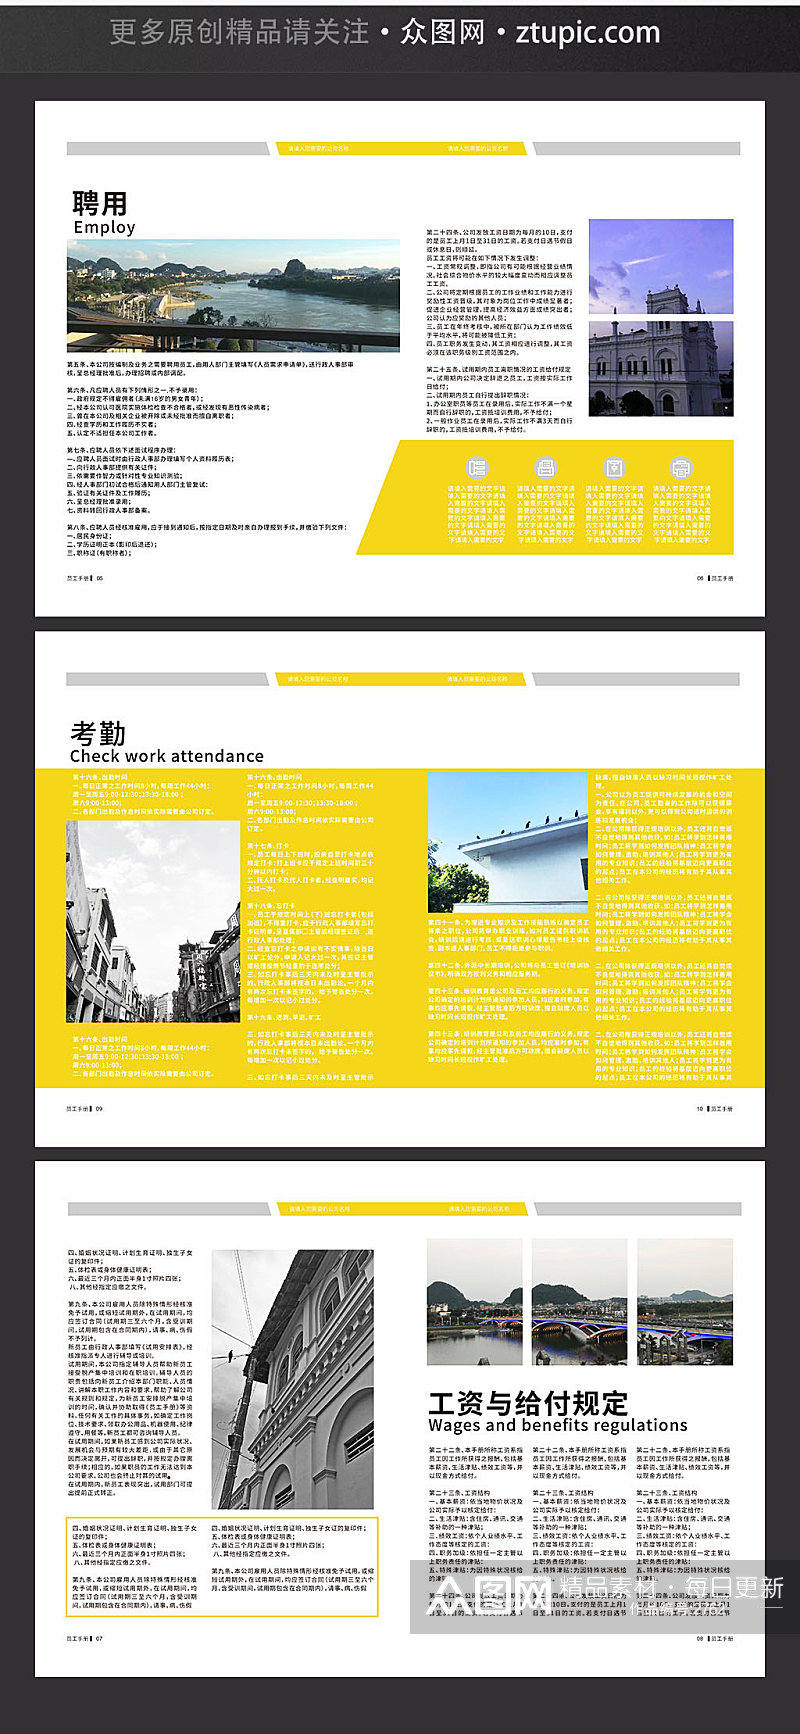 企业业务合作分析报告画册封面设计模板素材